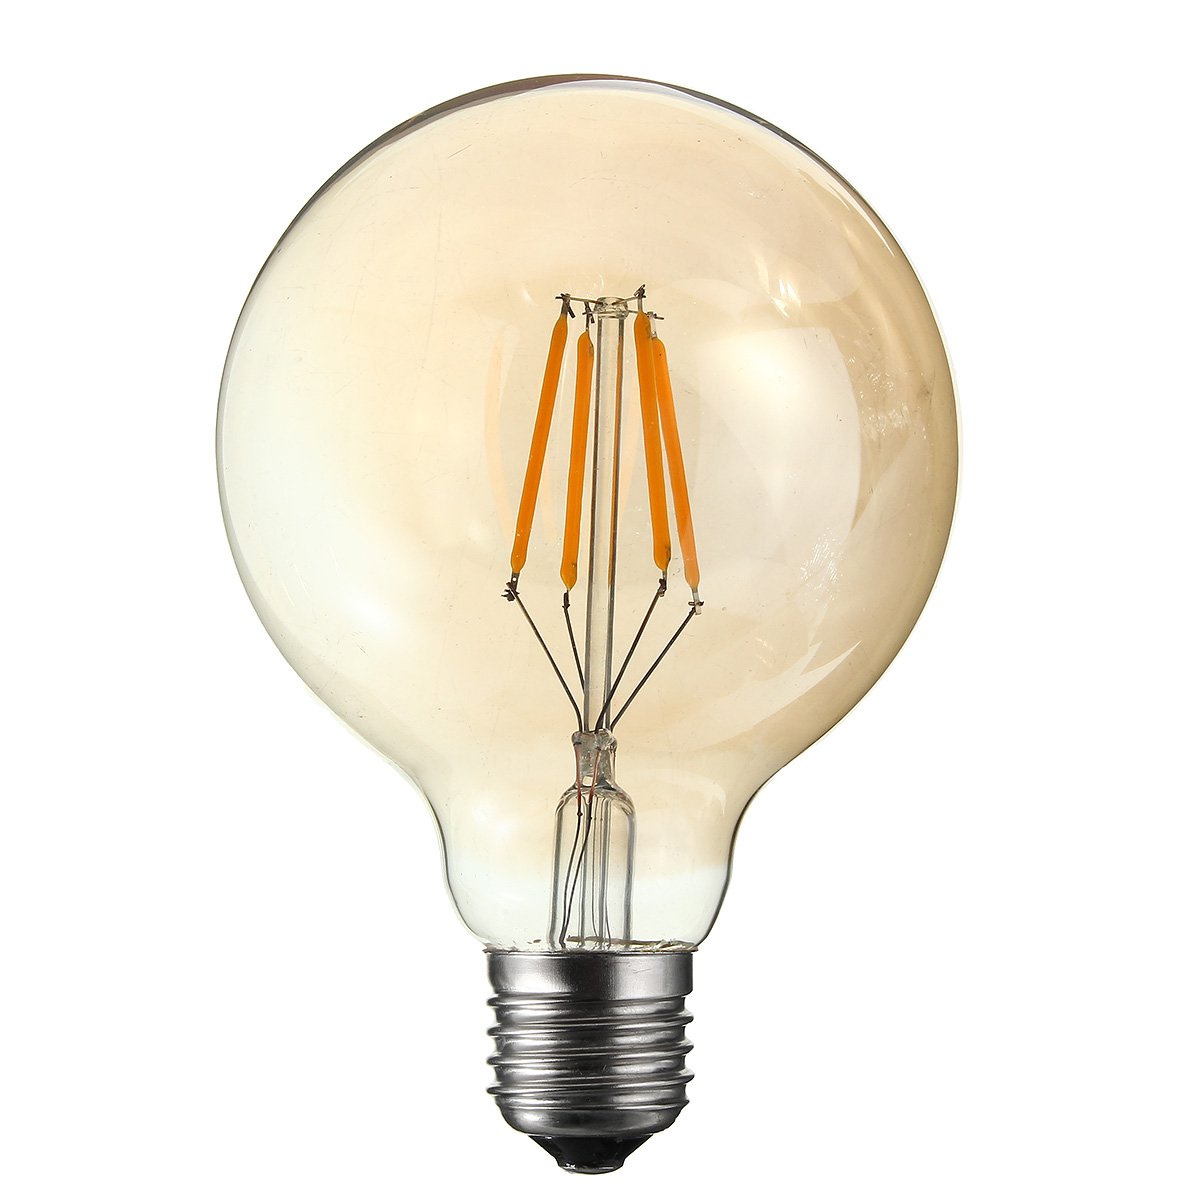 G95-E27-4W-Lampe